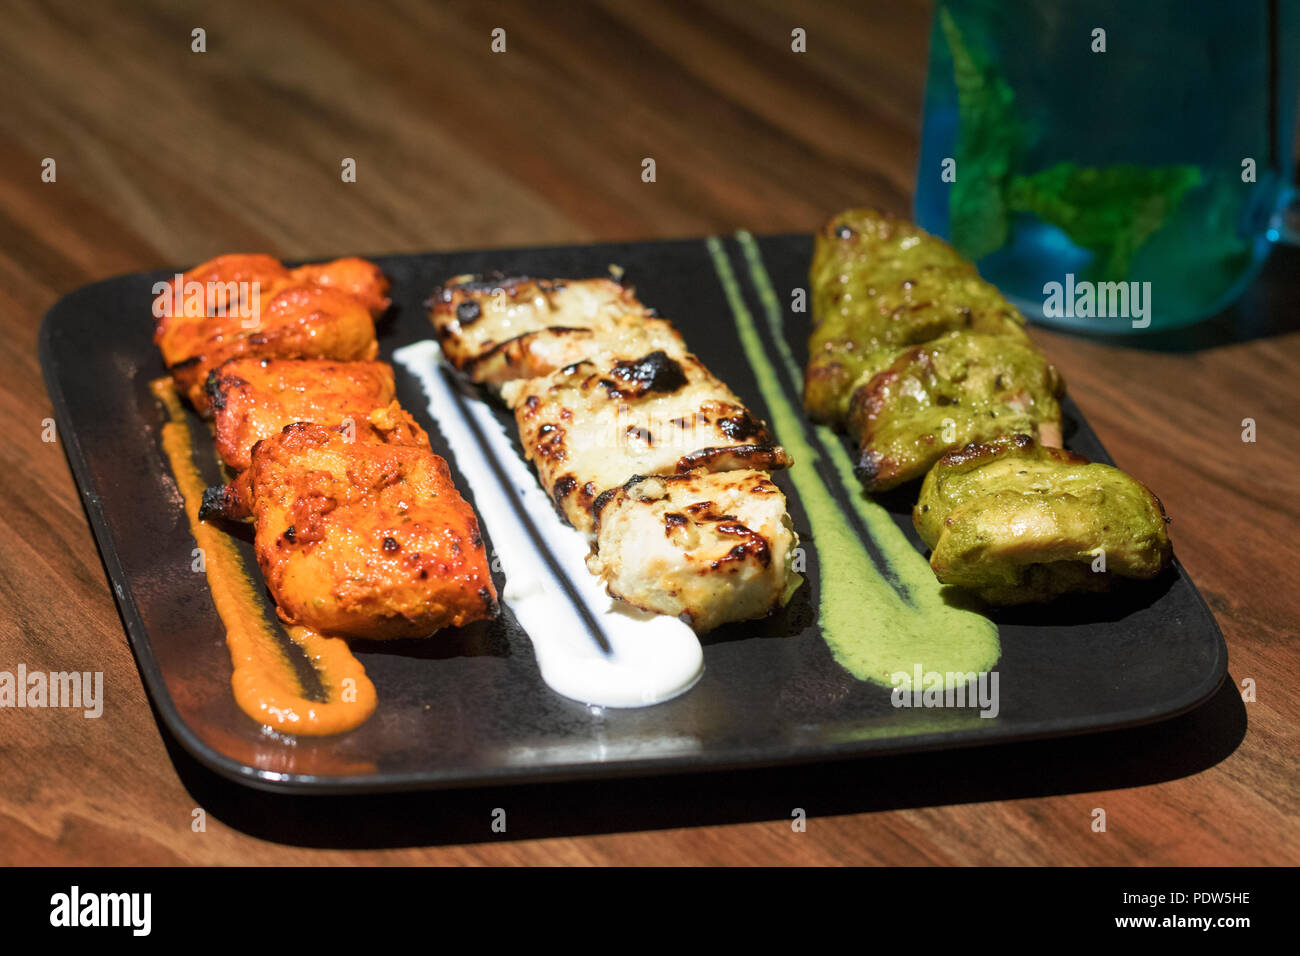 Der indischen Unabhängigkeit Tag spezielle Kebabs - Chicken Tikka, Murg Malai Kebab und Haryali Kebab. Stockfoto